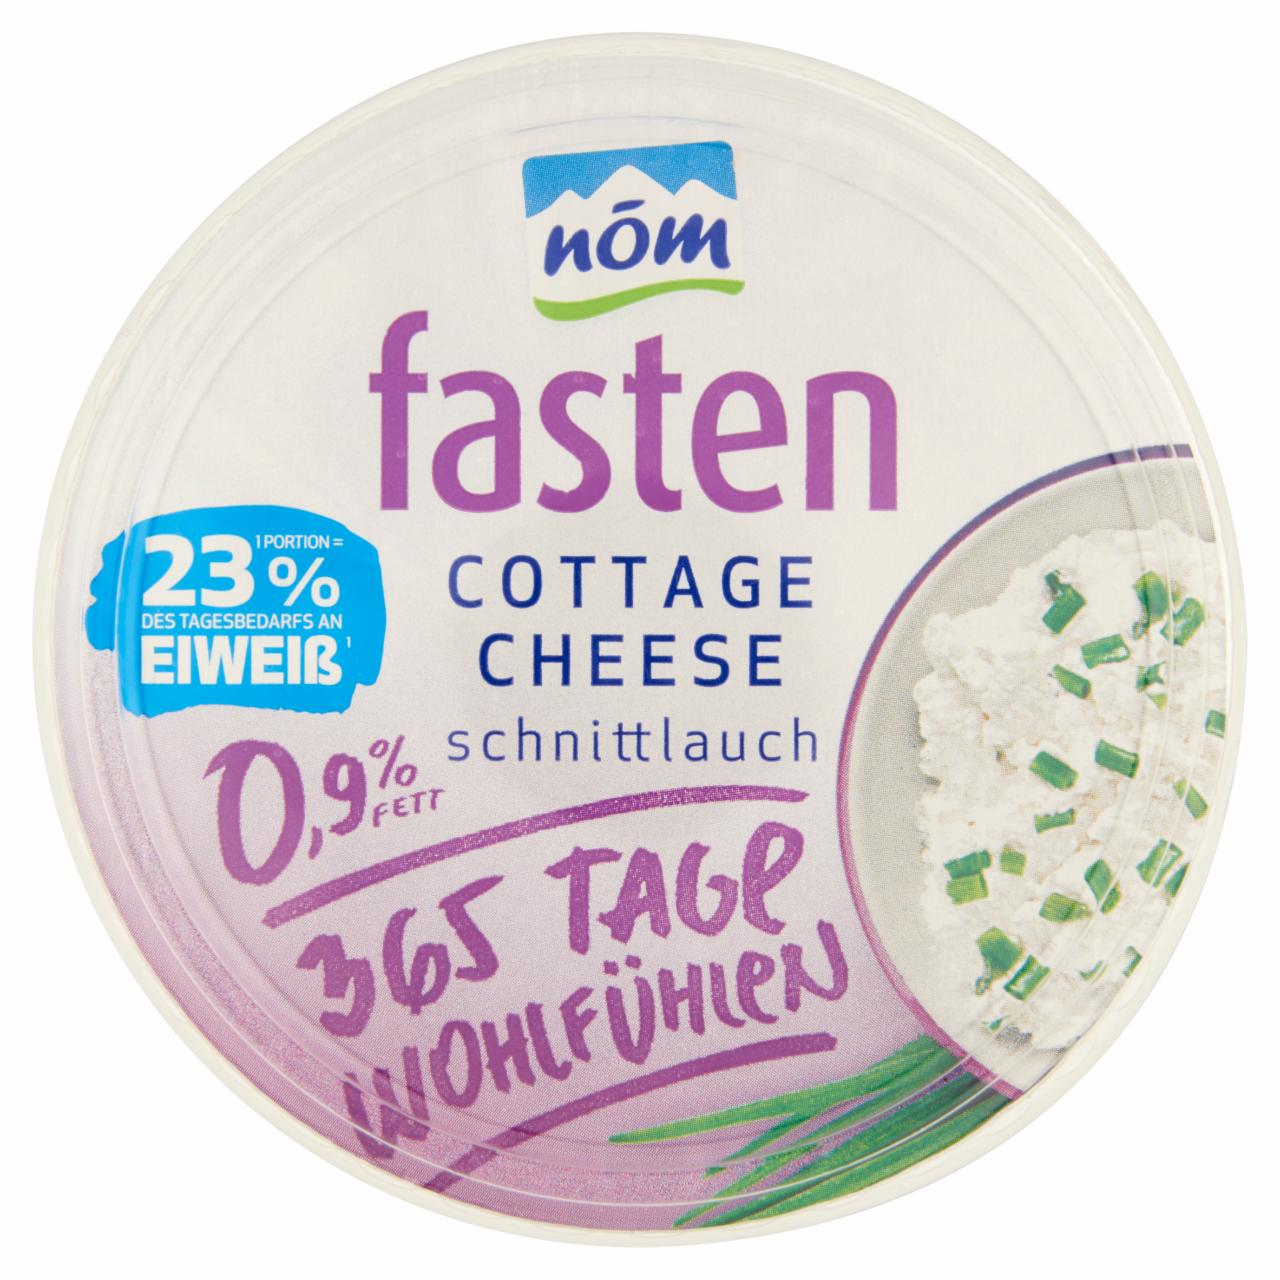 Képek - NÖM Fasten Cottage Cheese metélőhagymás friss sovány sajt 200 g